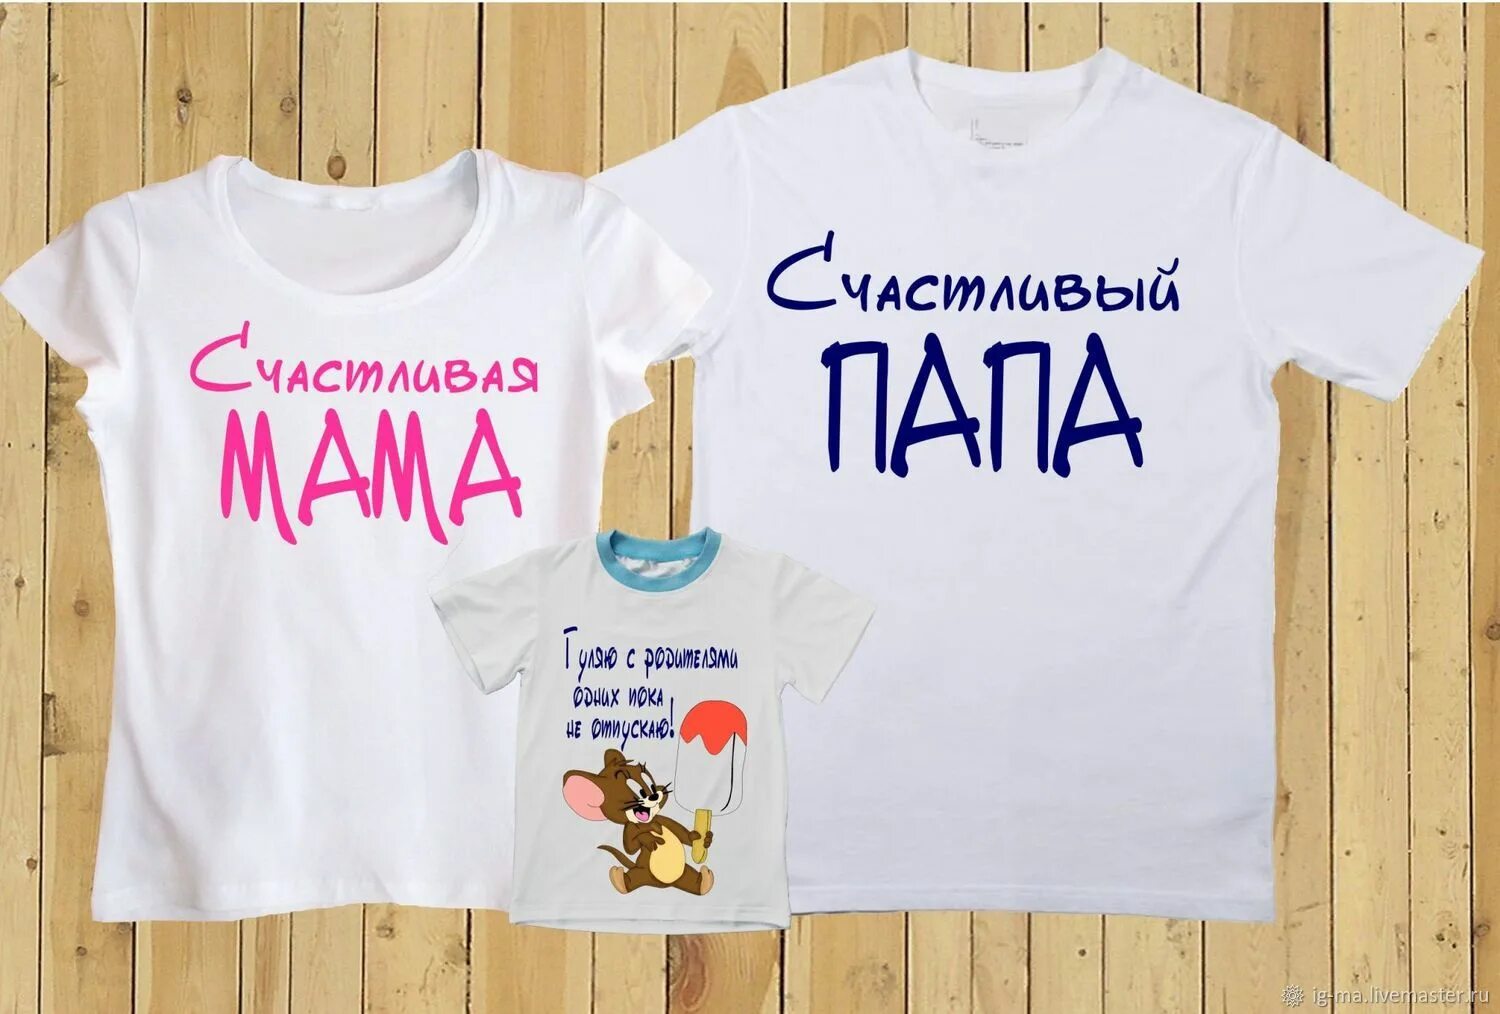 Мама папа продукт. Семейные футболки. Надписи на футболках для семьи. Парные футболки для семьи. Семейные футболки с надписями.